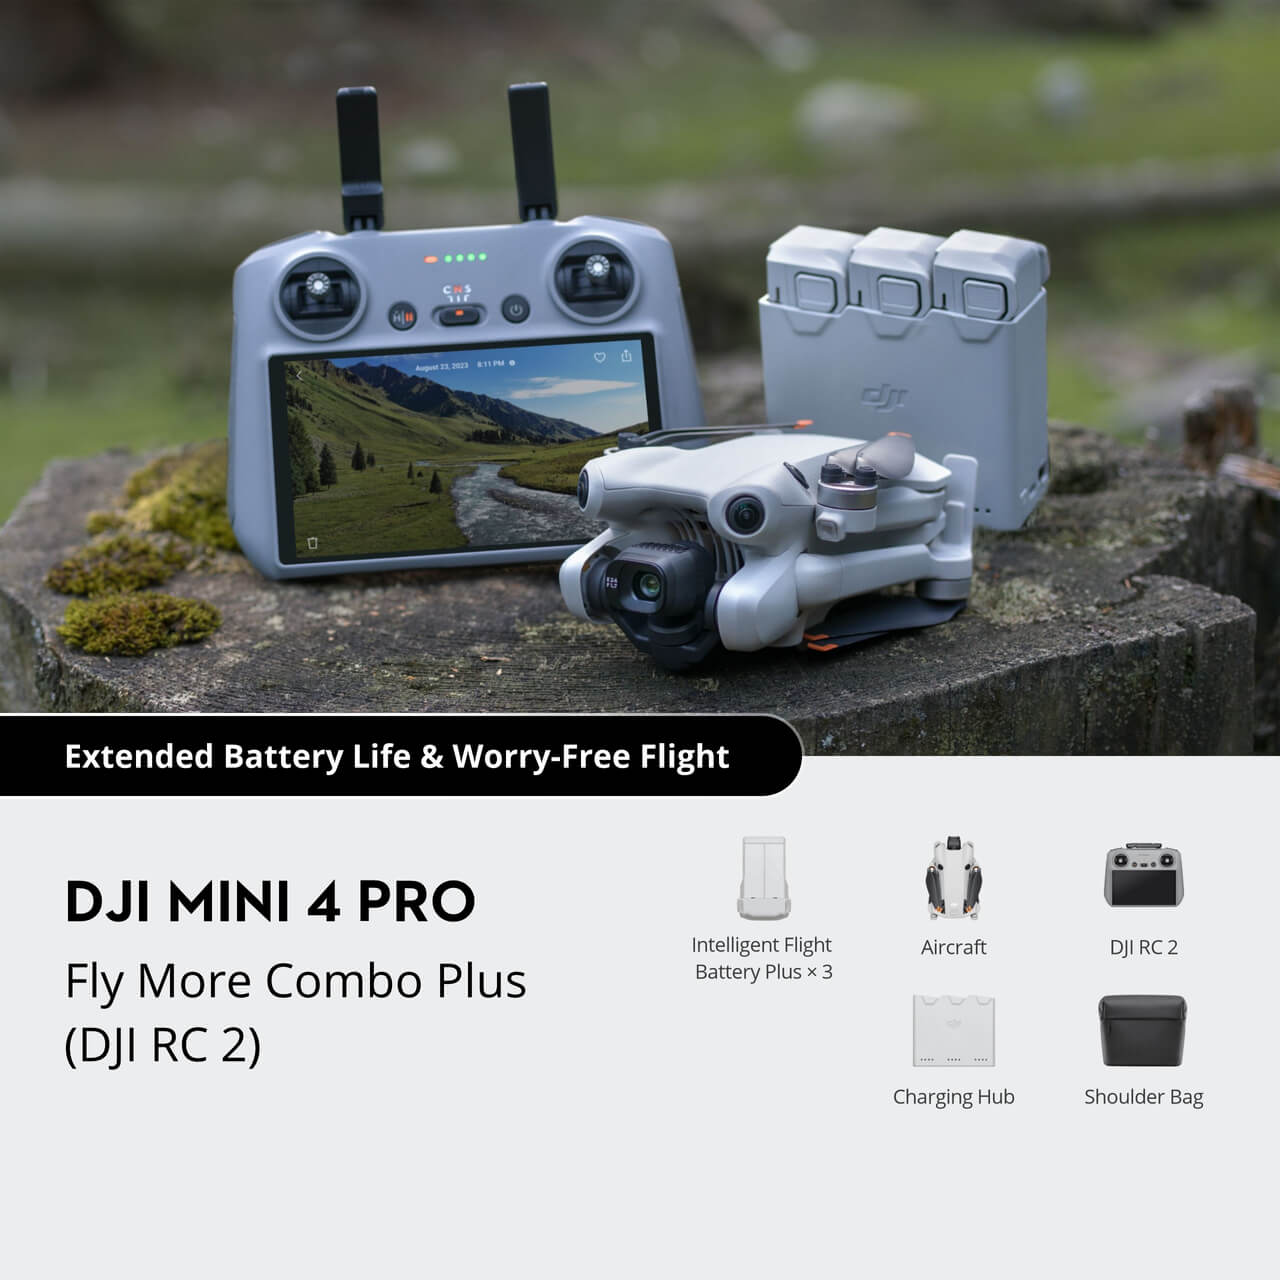  DJI Mini 4 Pro Fly More Combo Plus with DJI RC 2